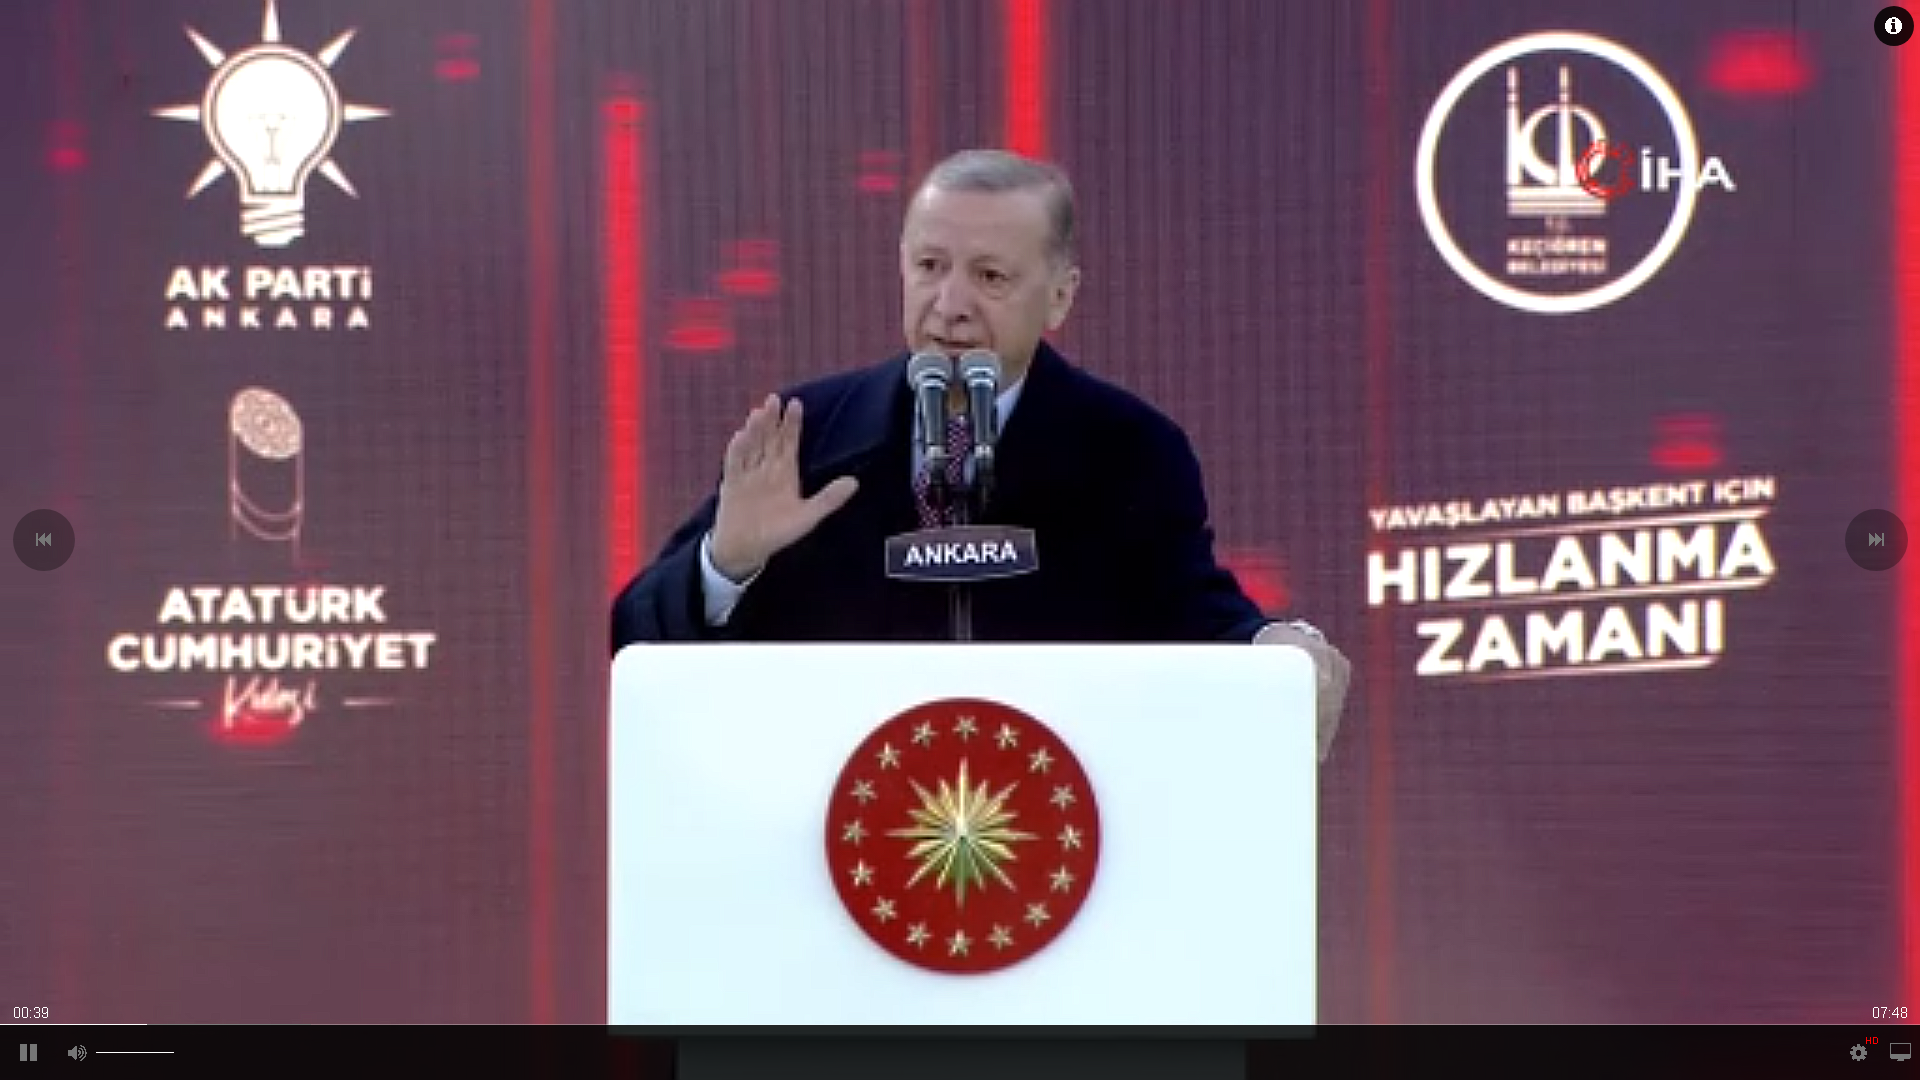 Cumhurbaşkanı Erdoğan: “Başkalarından farklı olarak biz verdiğimiz sözleri unutmaz hepsinin takibini yaparız”